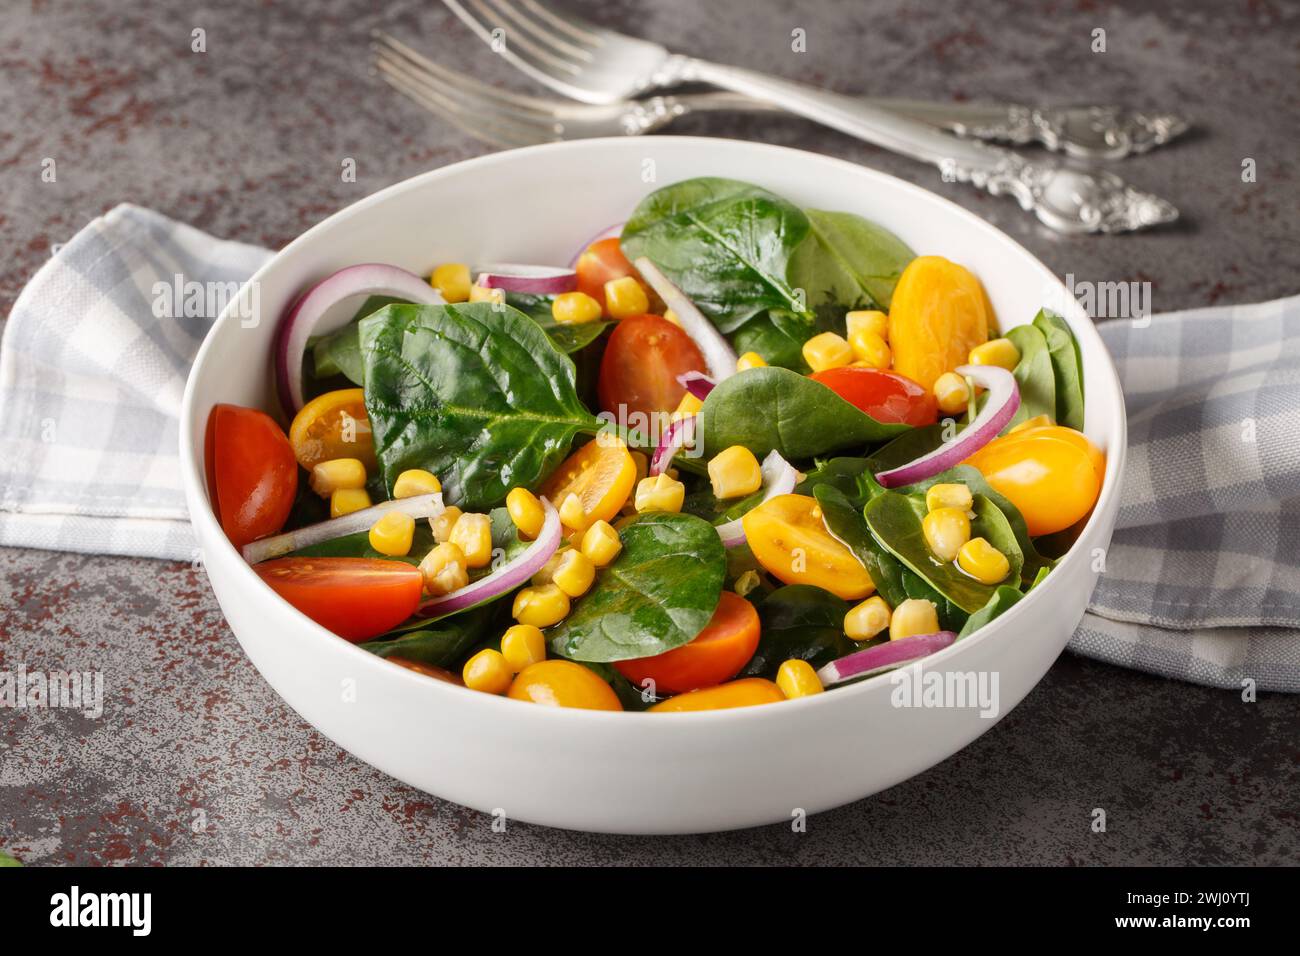 Salade simple légère d'épinards frais, de maïs, de tomates cerises et d'oignons rouges avec vinaigrette à l'huile d'olive de près dans un bol sur la table. Horizontal Banque D'Images